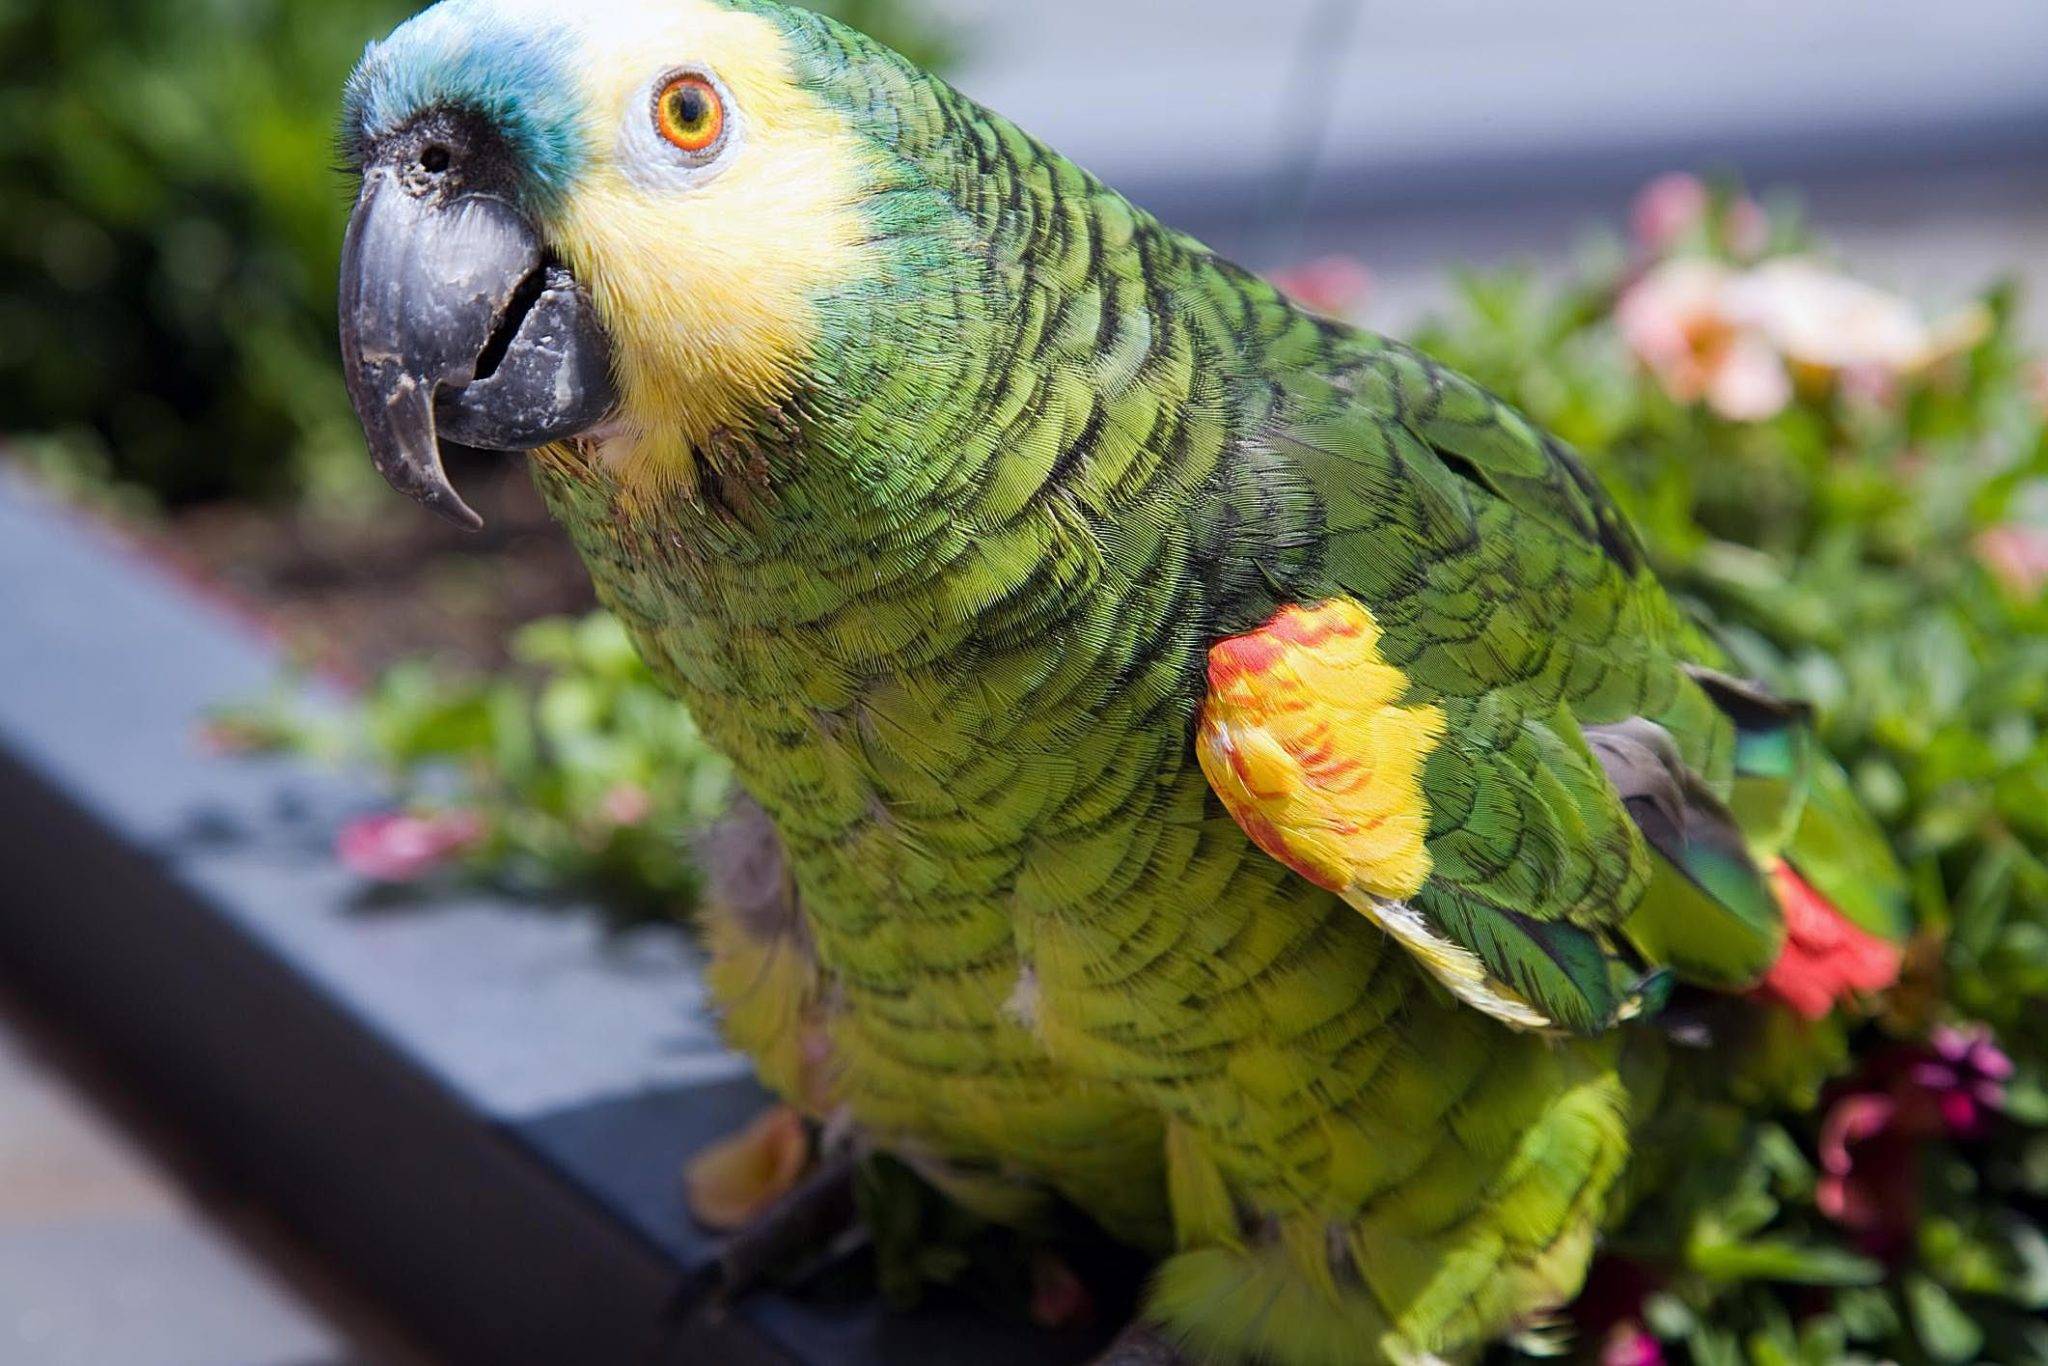 Виды попугаев: интересные факты о маленьких, средних и больших попугаях